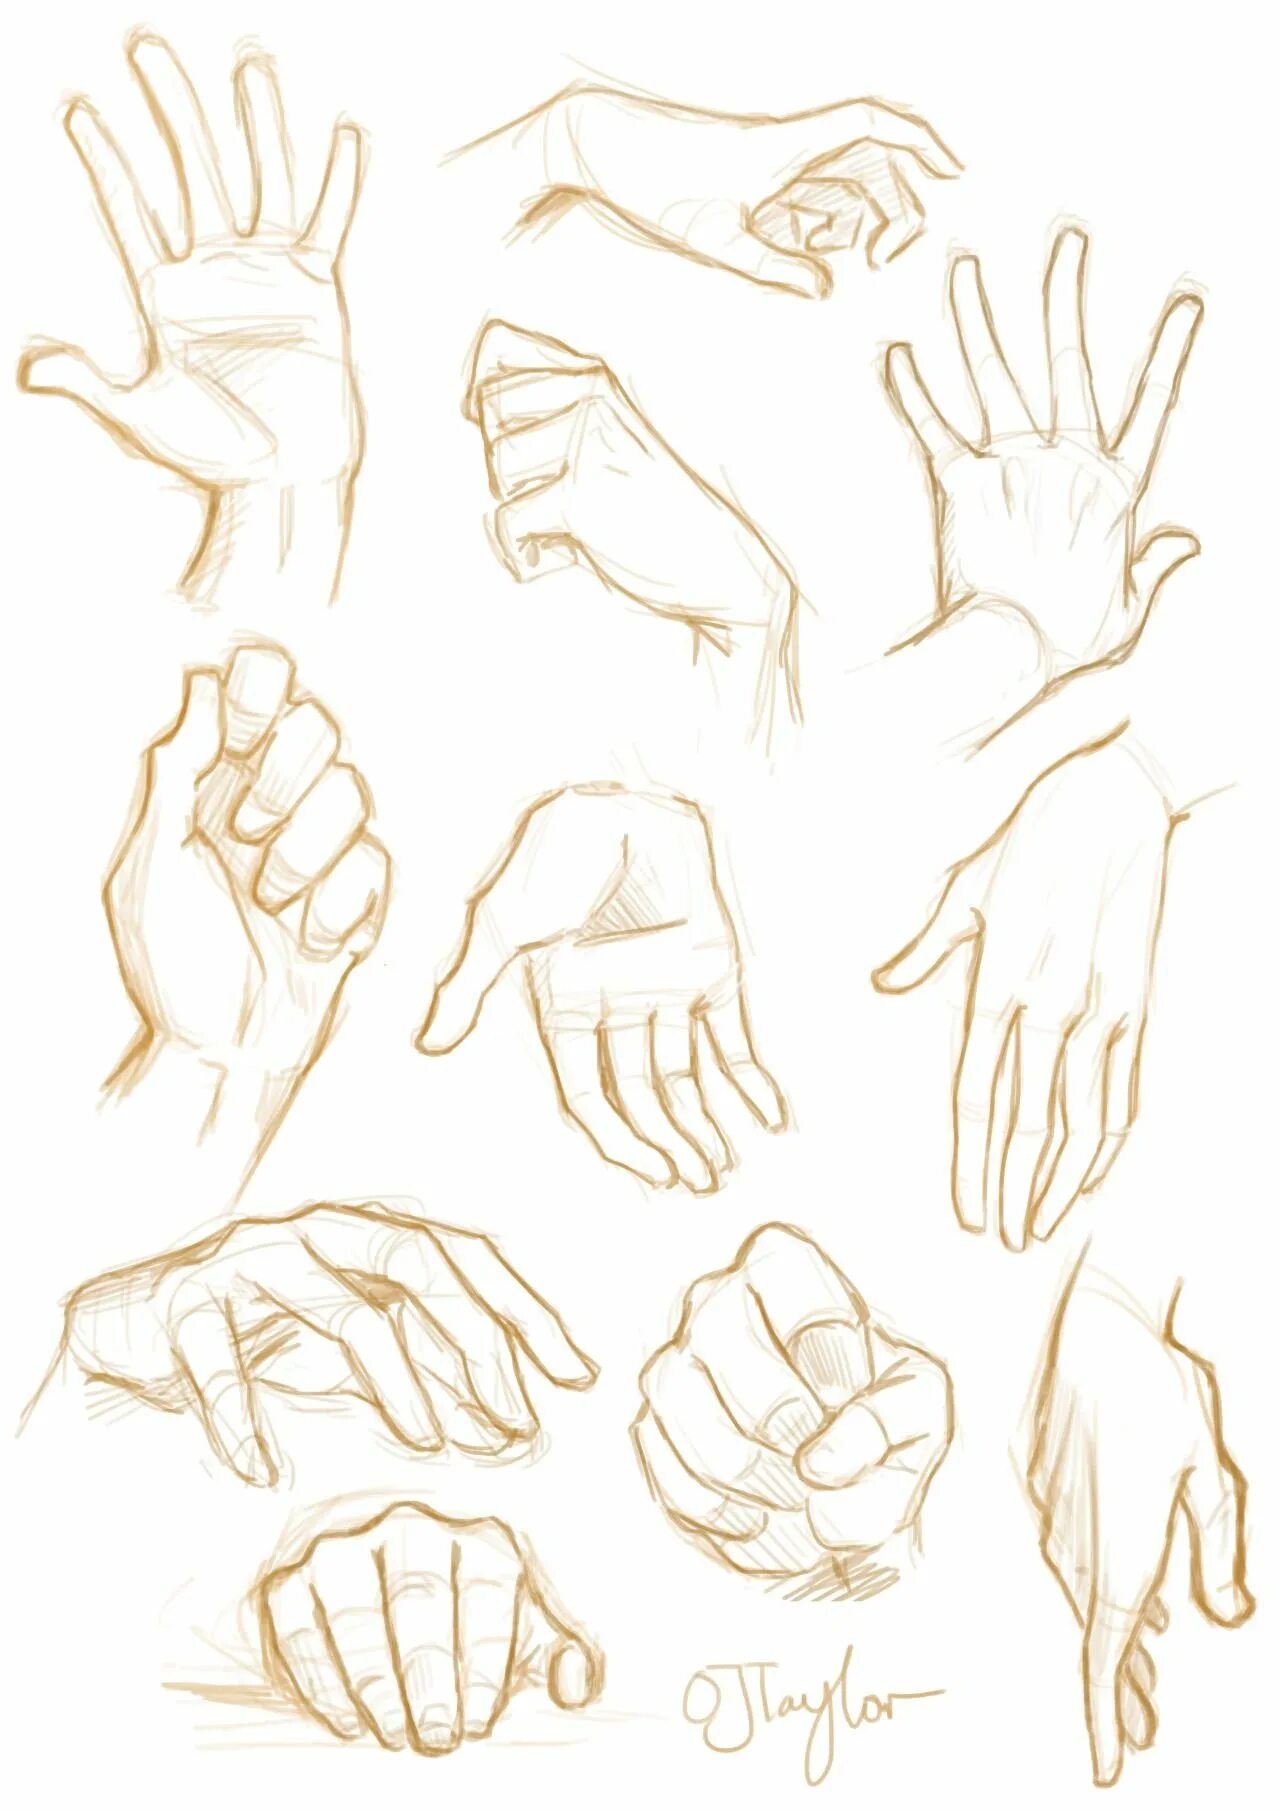 Референсы рук. Руки для рисования. Руки референсы для рисования. Кисти рук для рисования.